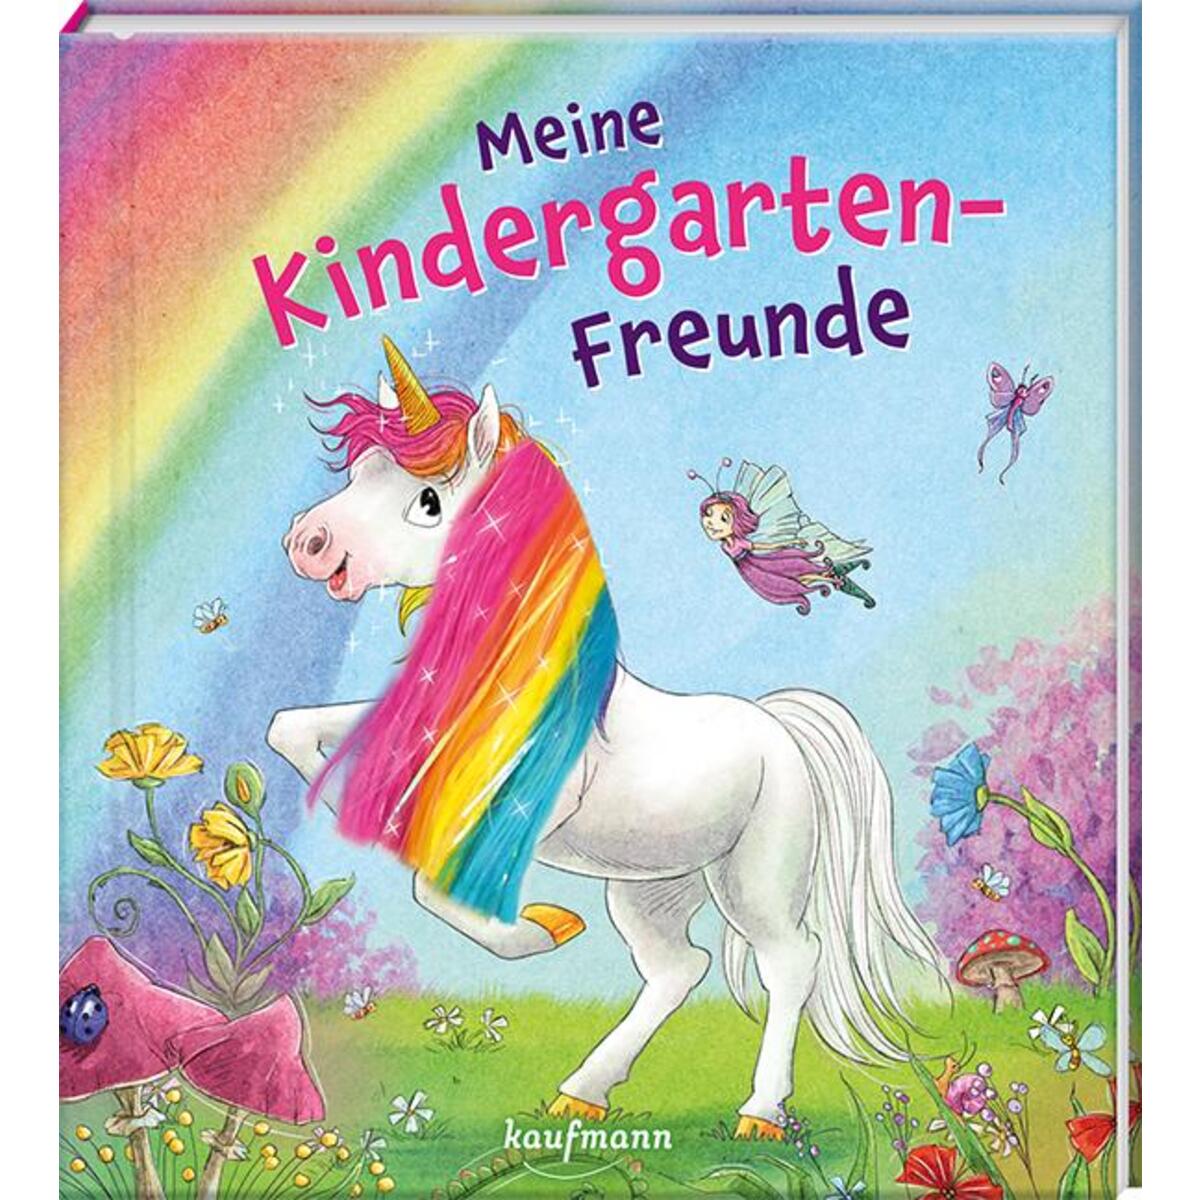 Meine Kindergarten-Freunde von Kaufmann Ernst Vlg GmbH